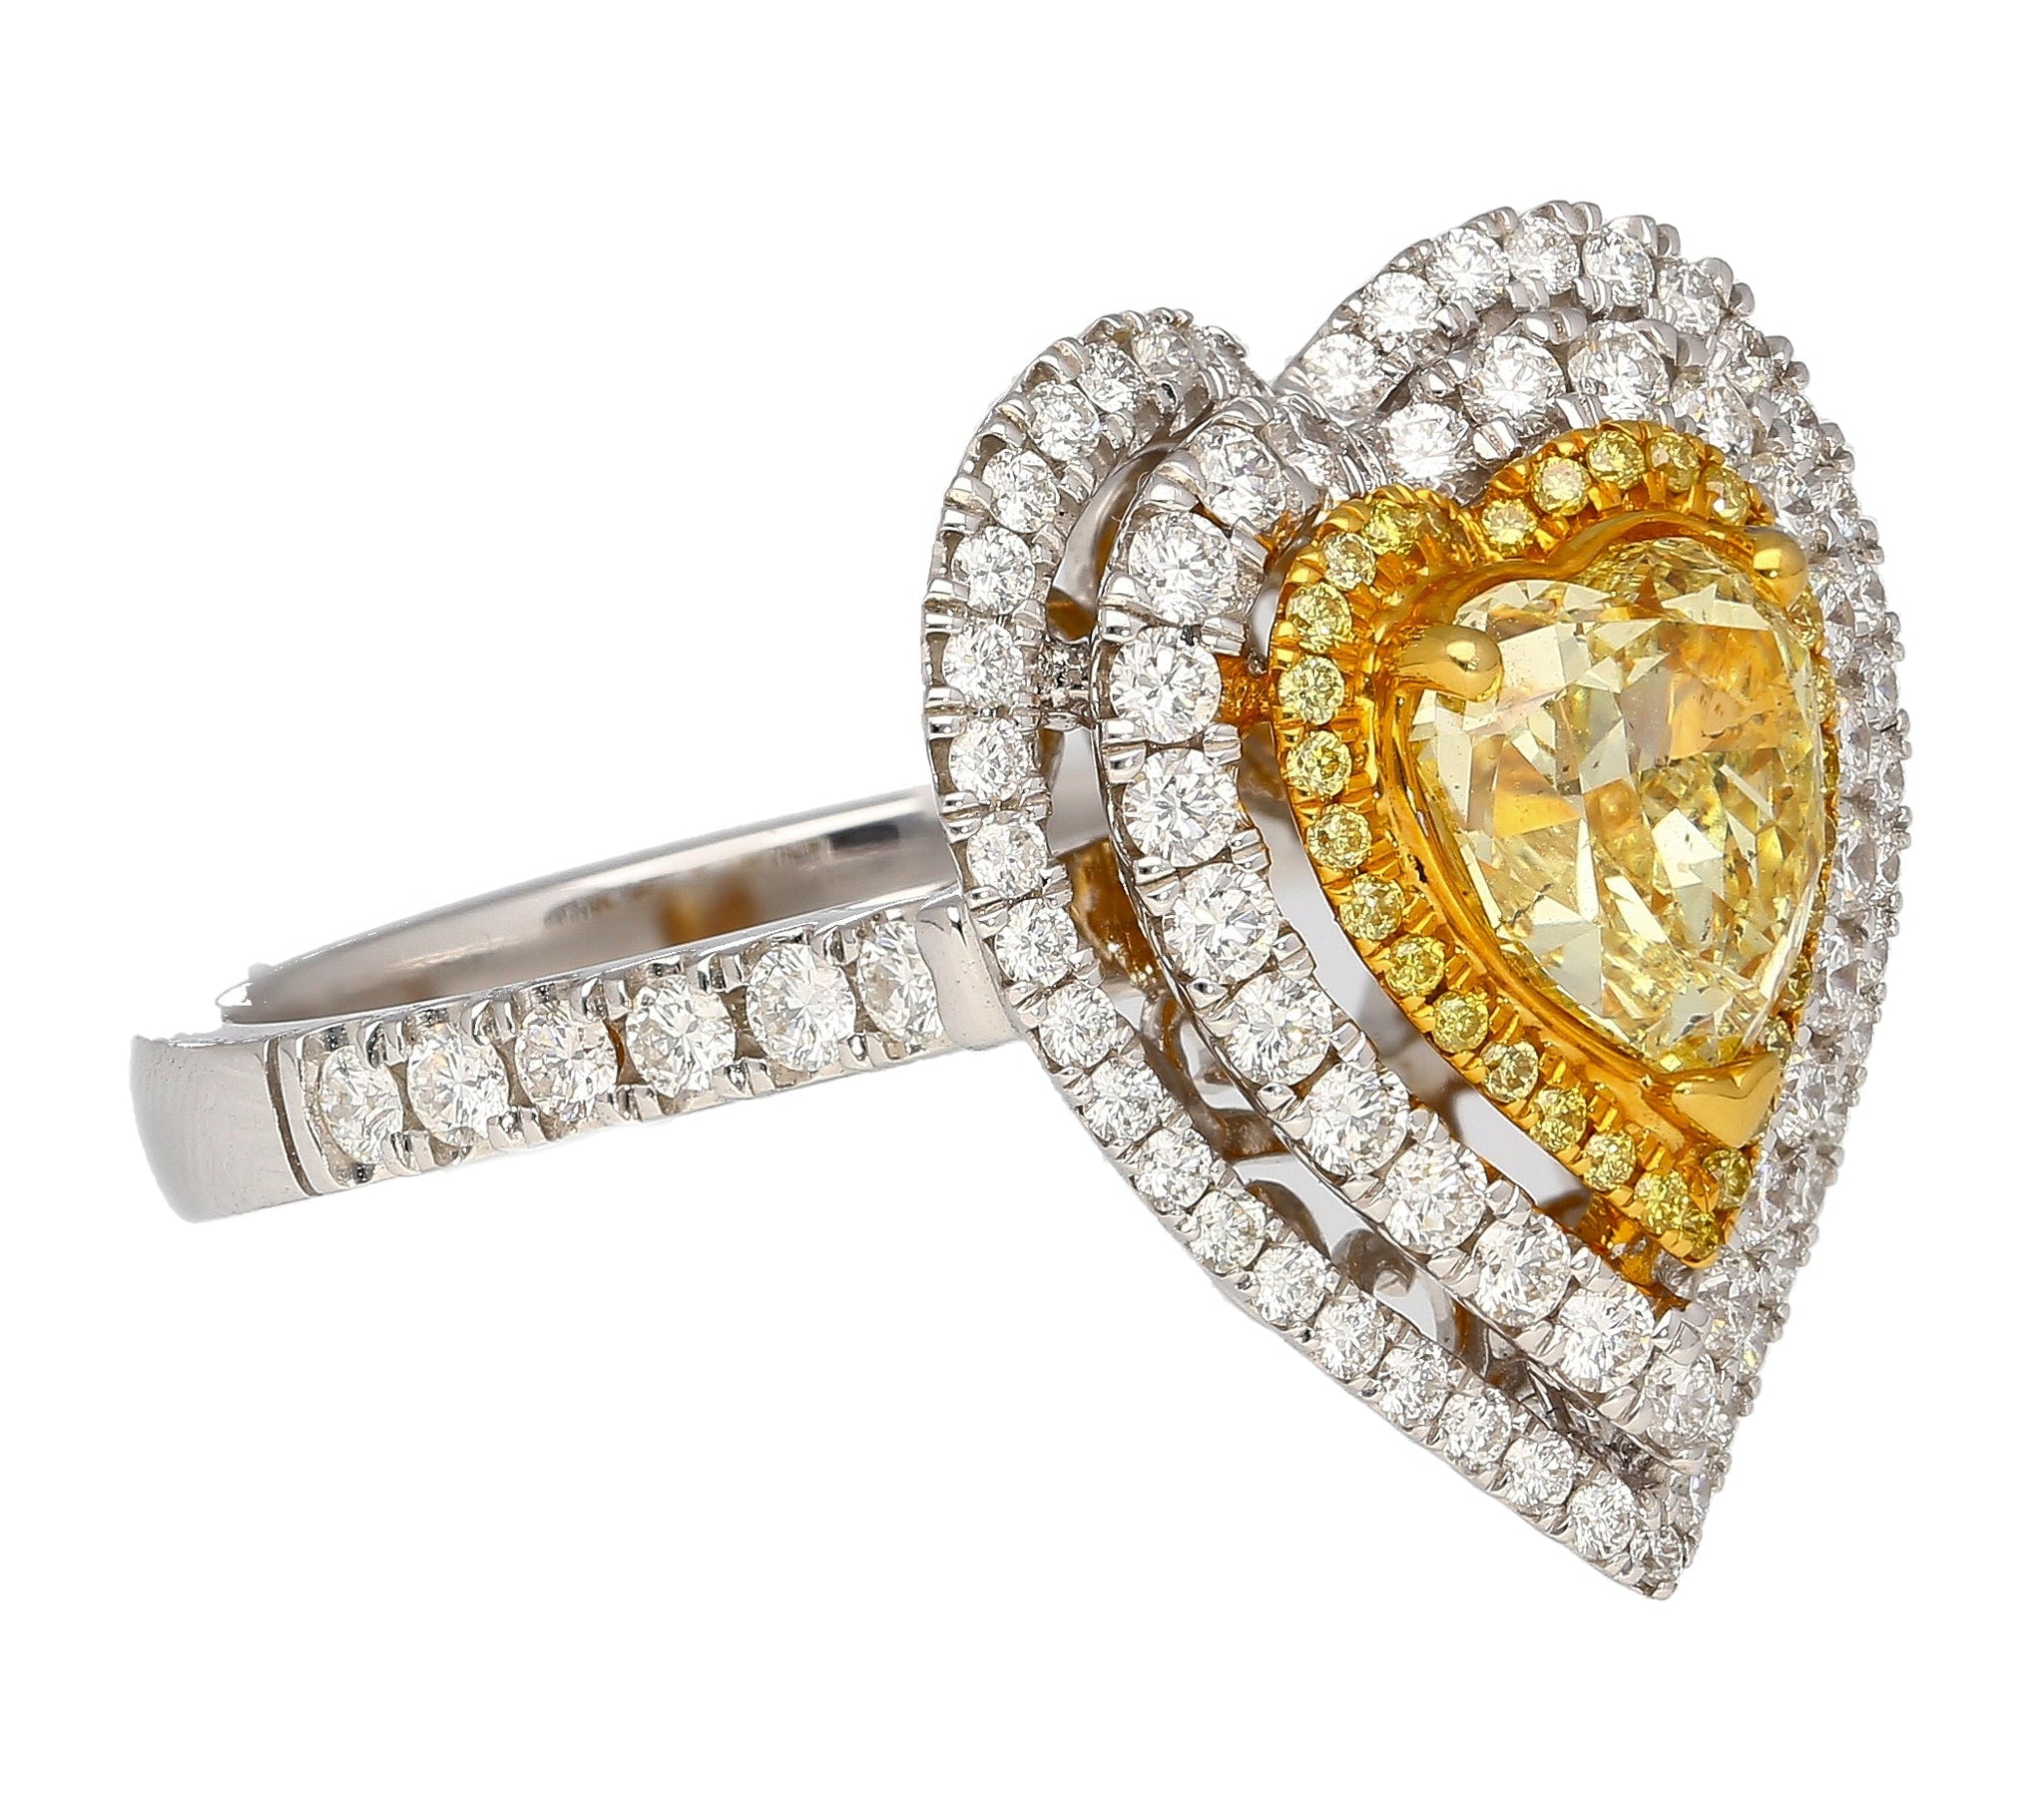 1.39 Carat GIA Certified Fancy Yellow Heart Cut Diamond Double Halo Ring